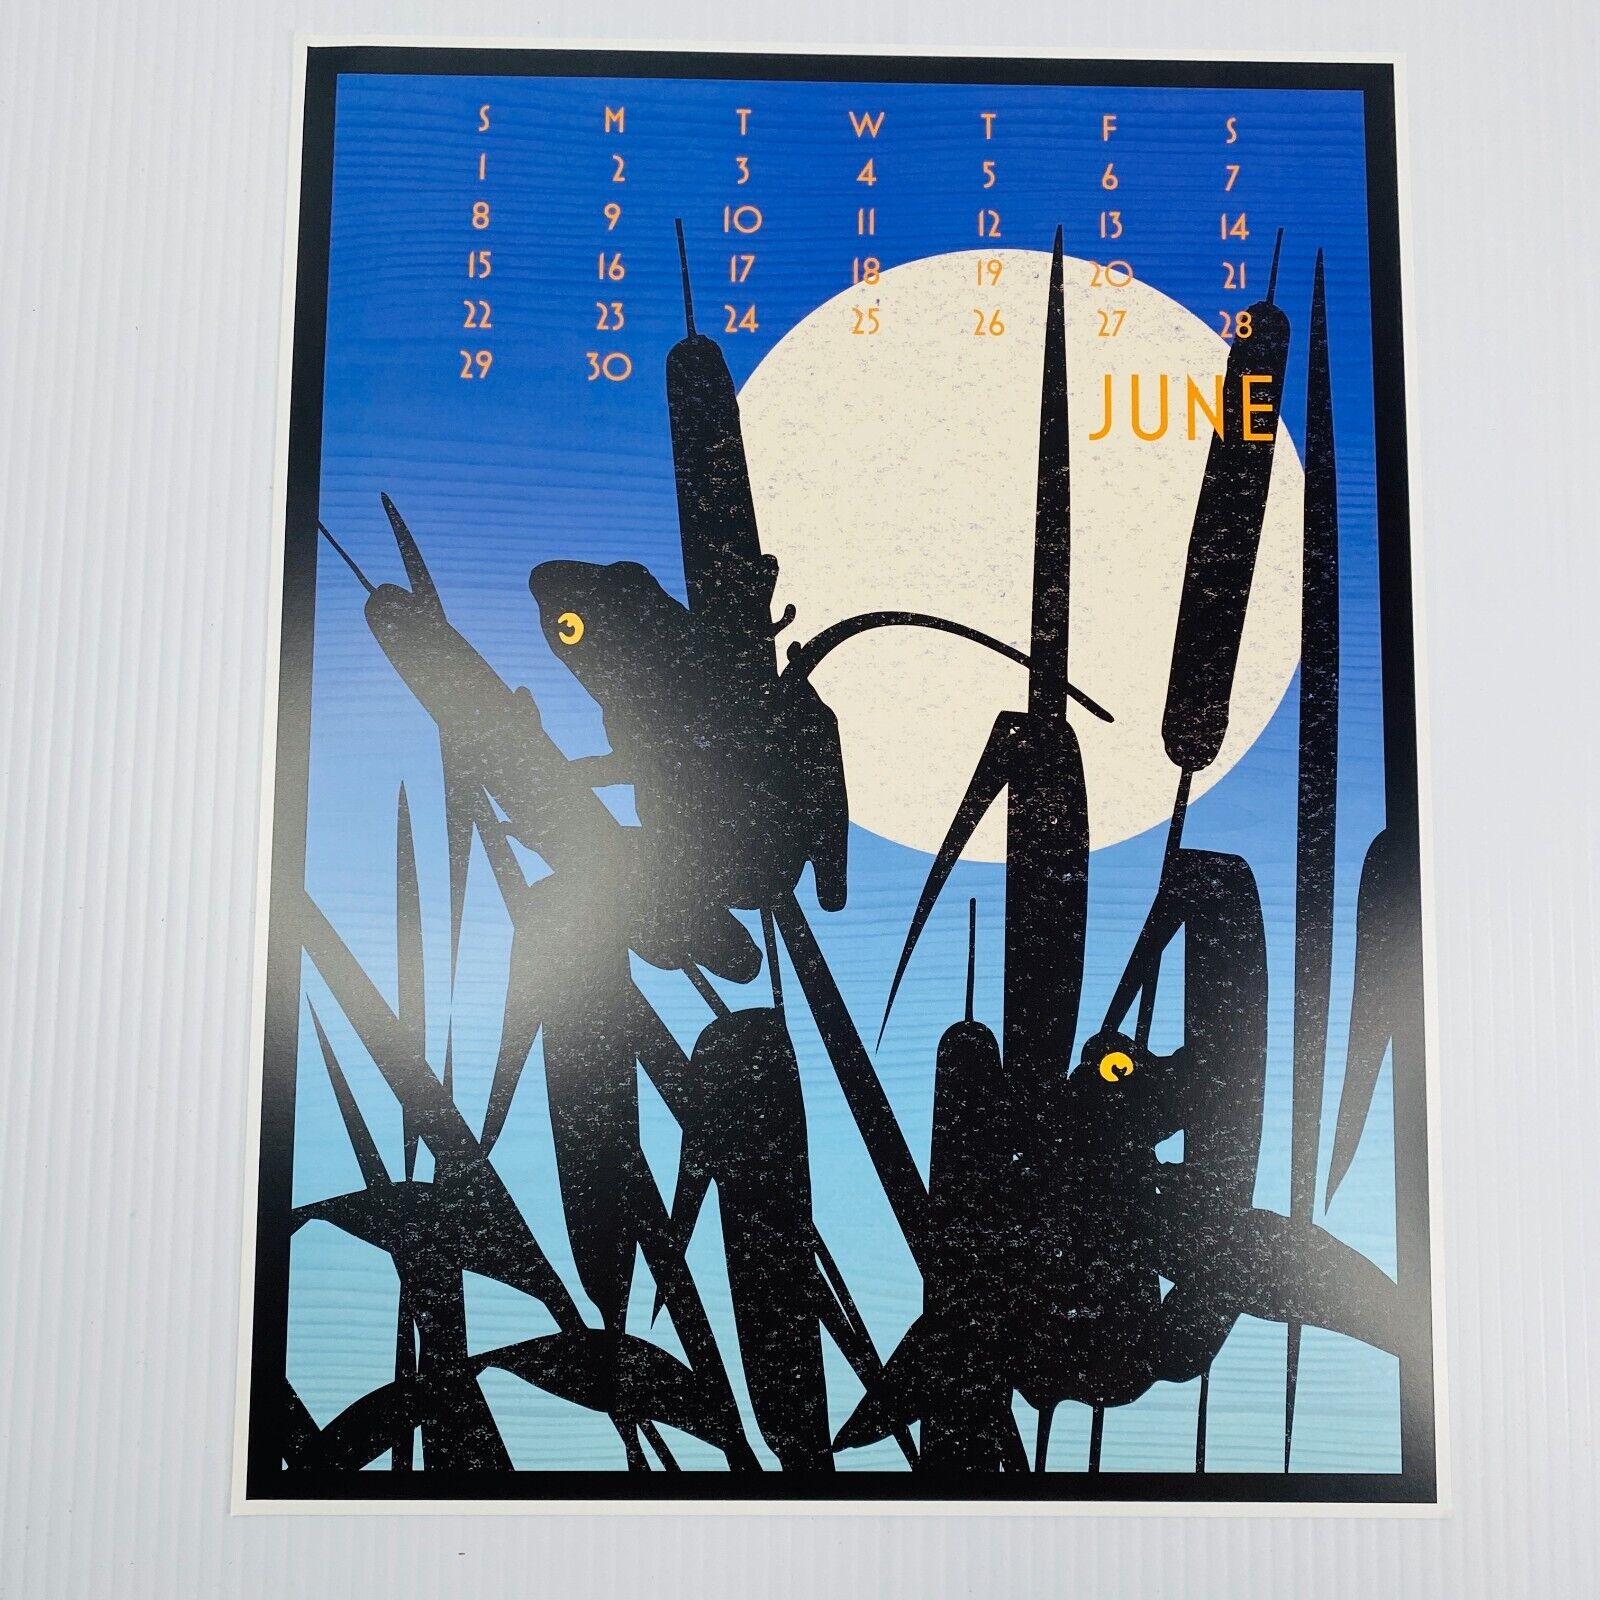 2014 Linnea Poster Calendar 11x14 Replacement Month: JUNE Art Print Moon Frog